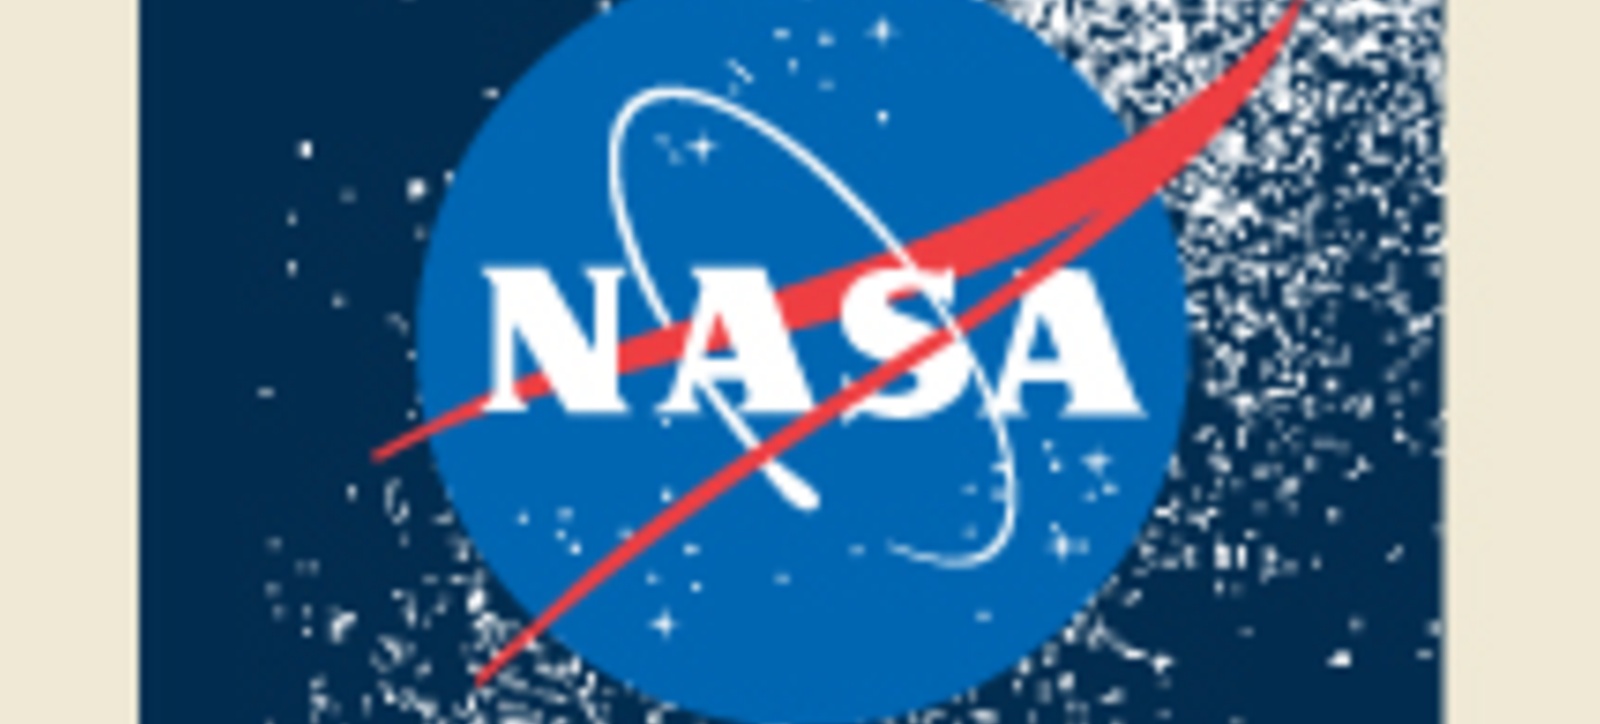 The NASA logo